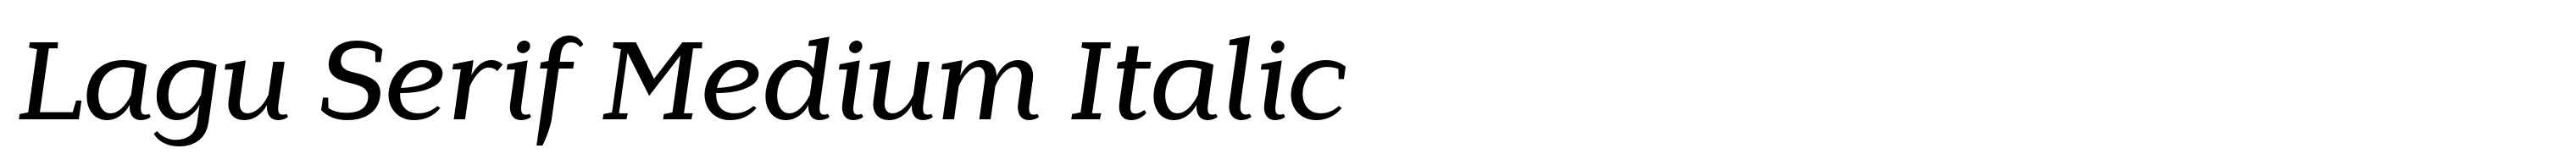 Lagu Serif Medium Italic